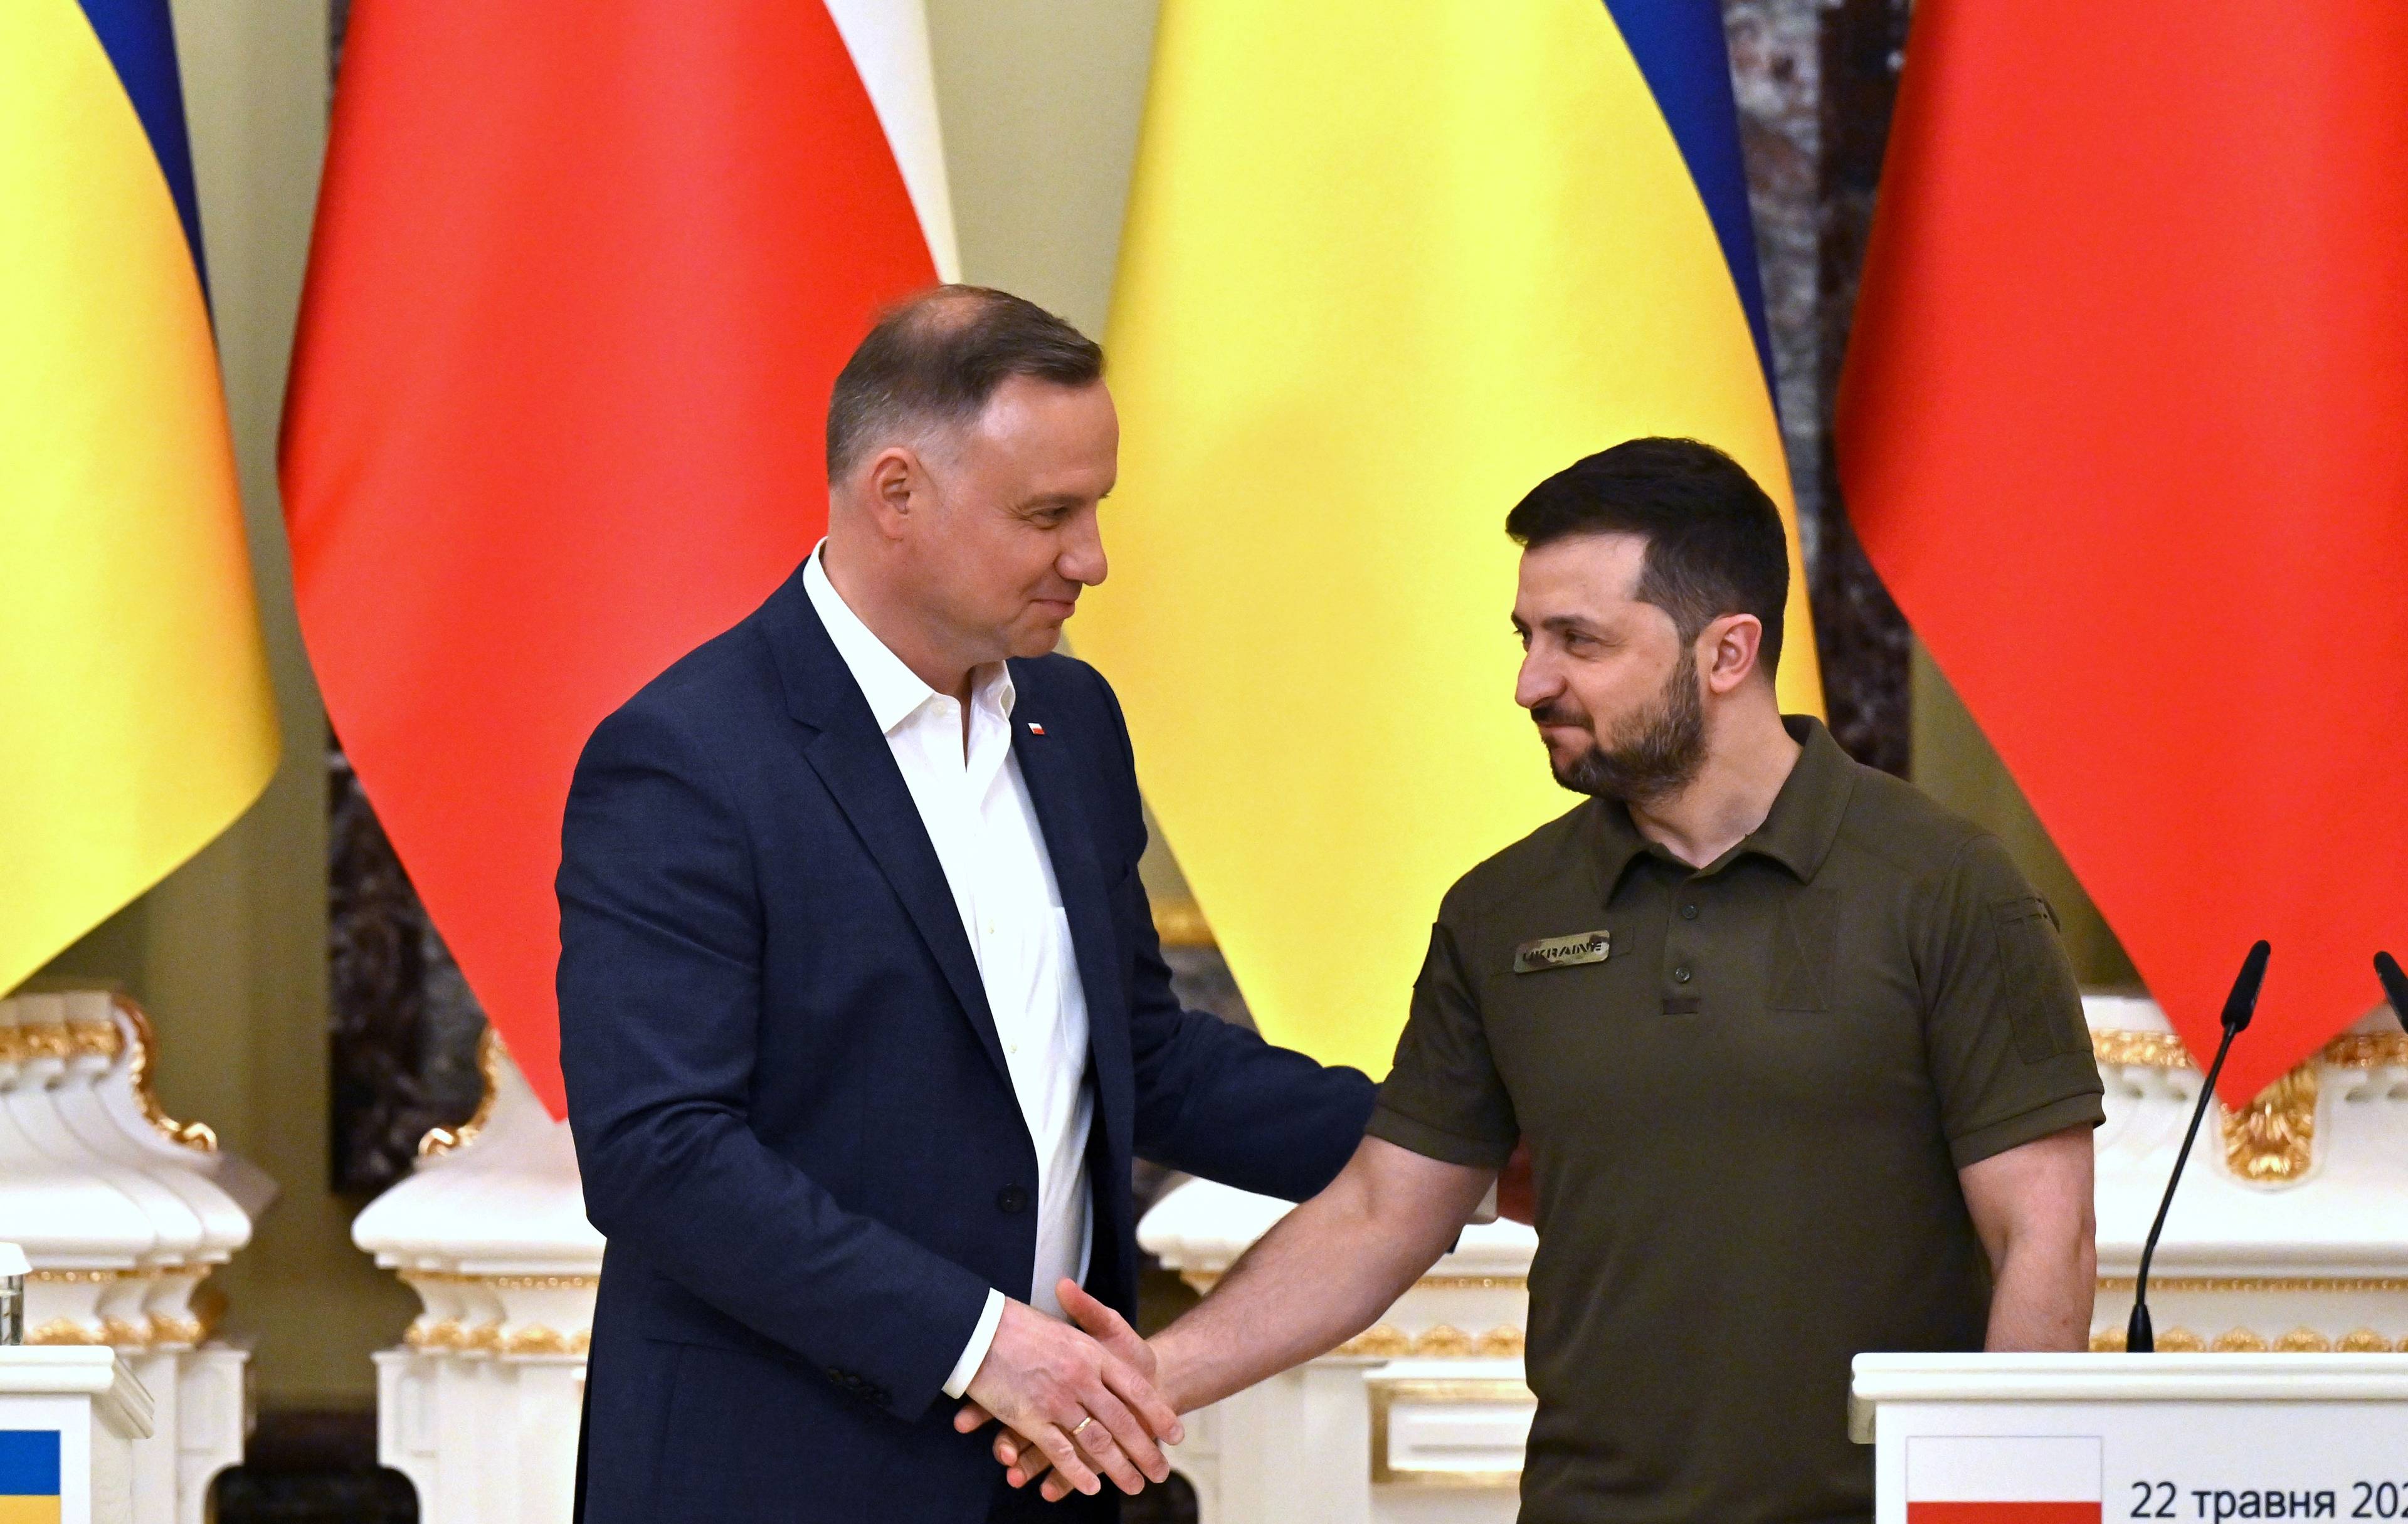 Prezydenci Andrzej Duda i Wołodymir Zełenski podają sobie ręce tle flag: ukraińskiej i polskiej